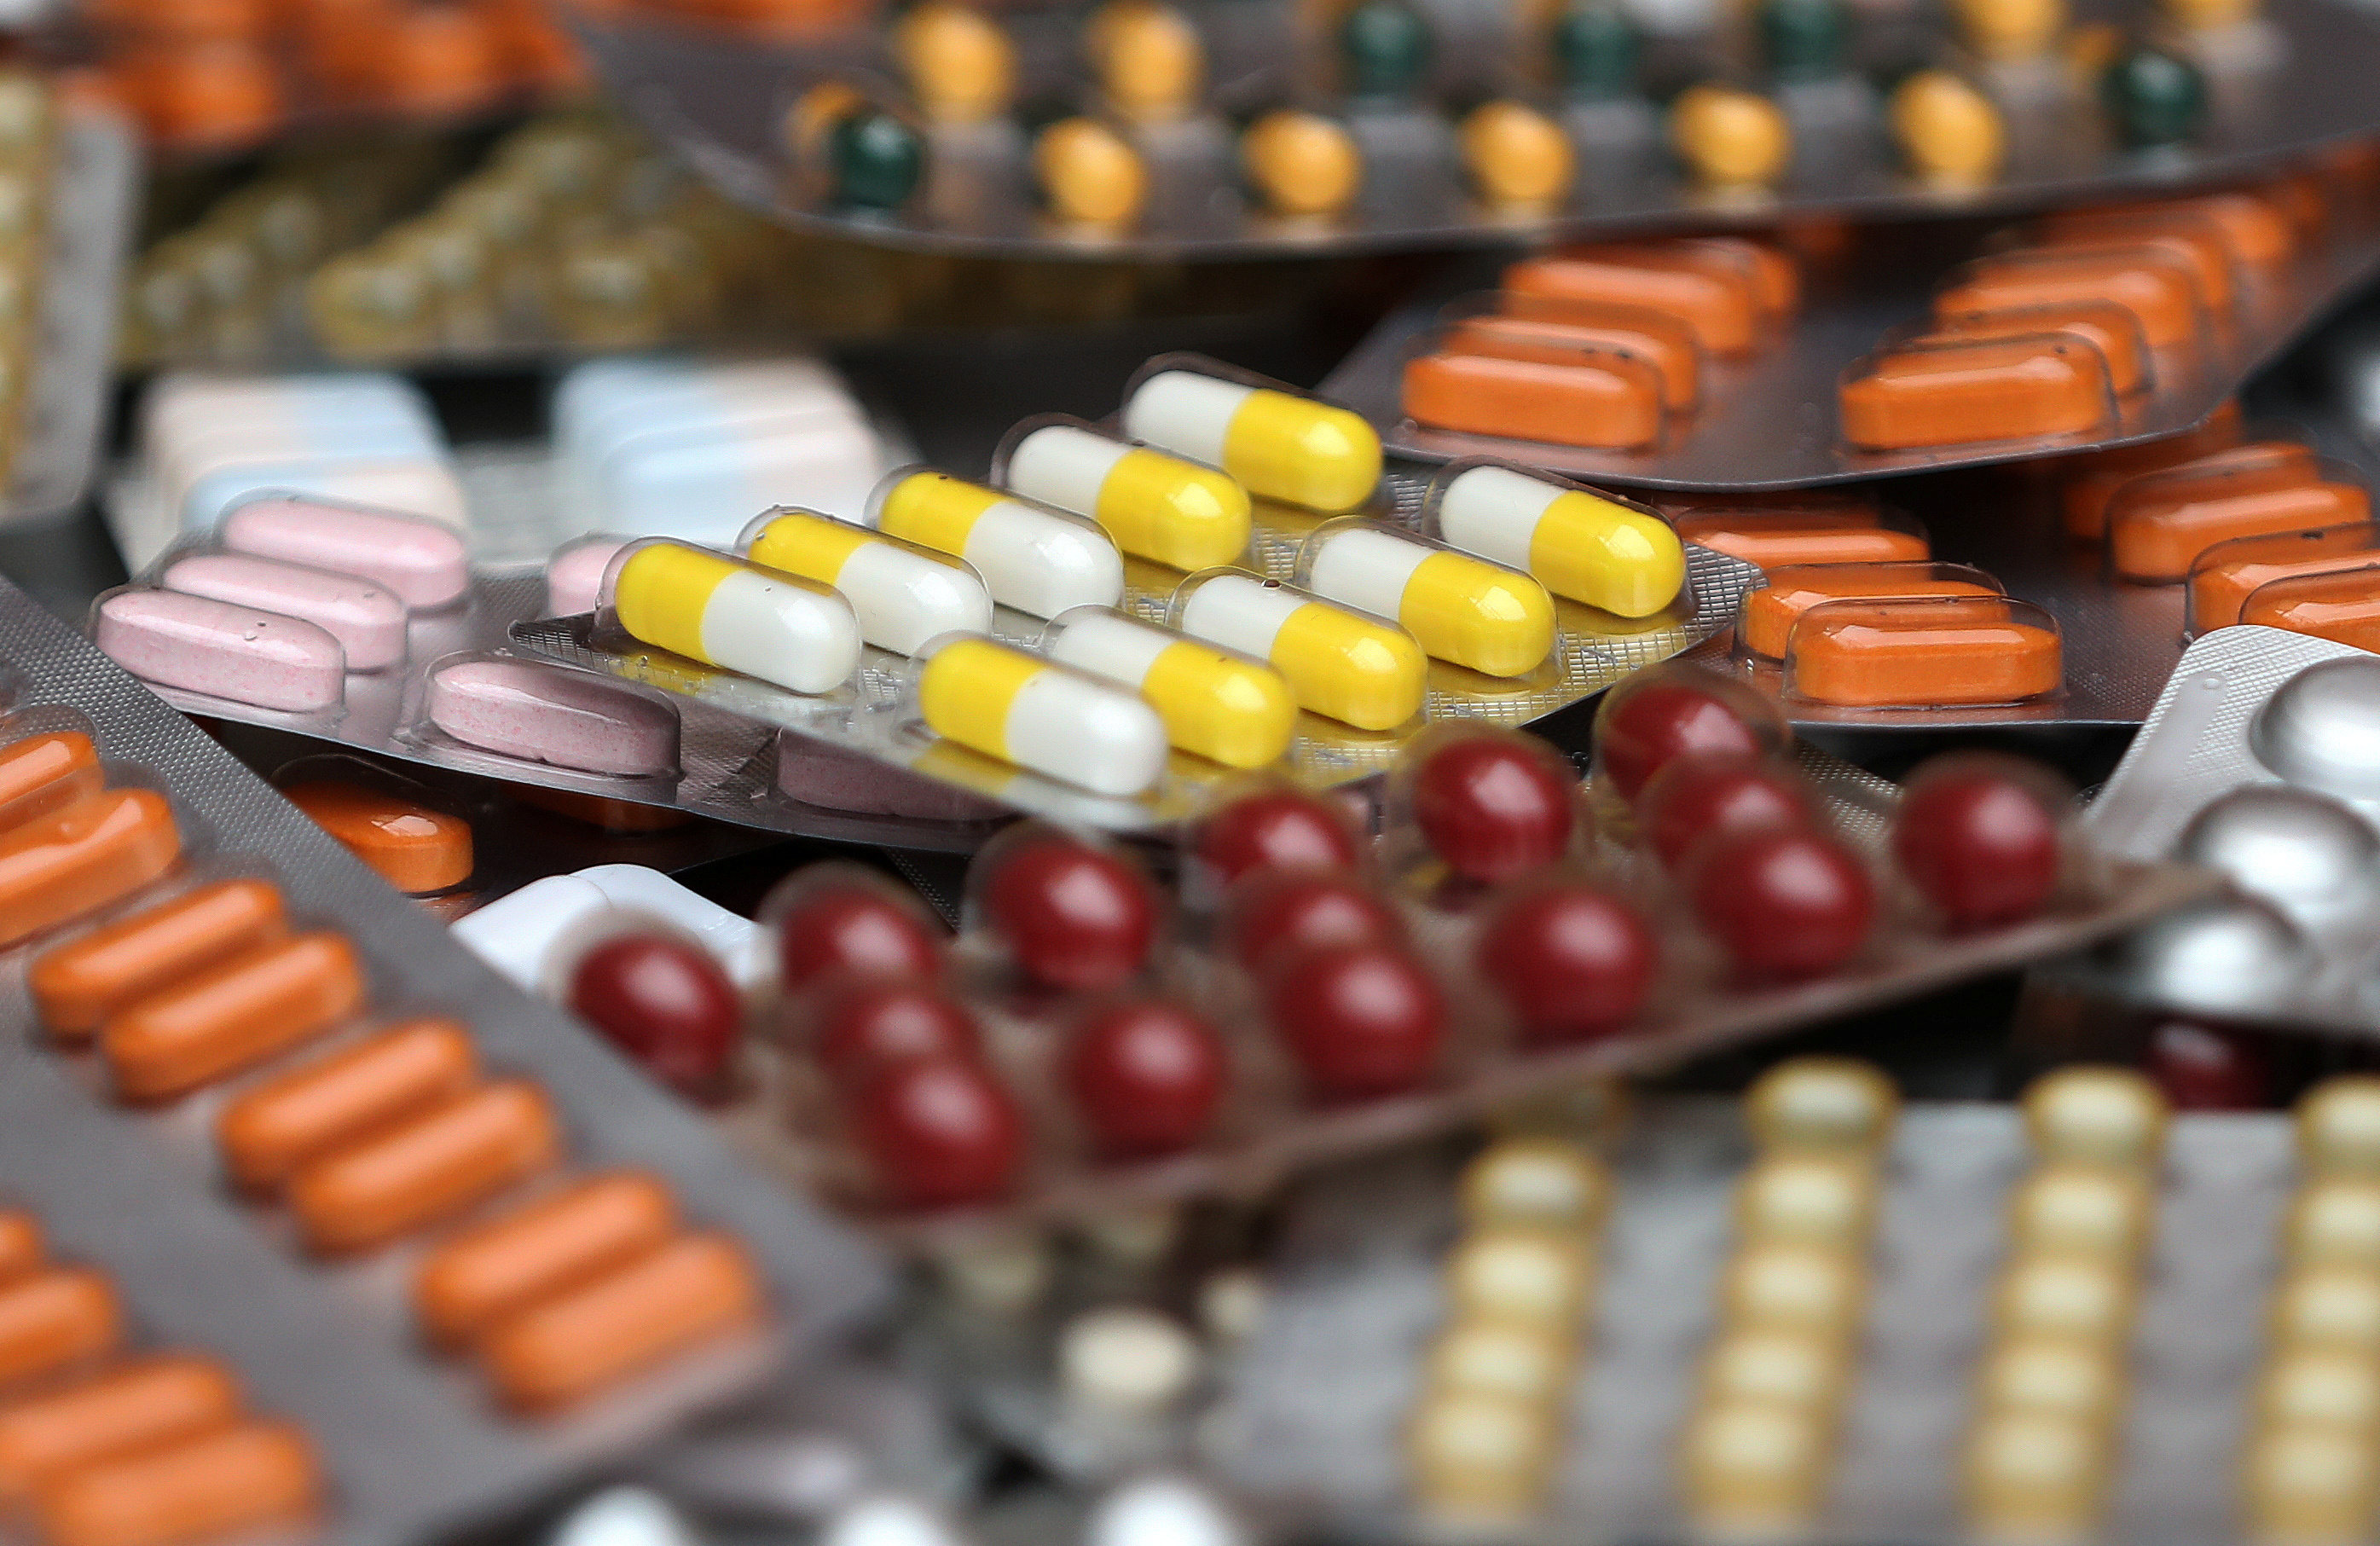 Μελέτη ΙΟΒΕ – ΣΦΕΕ: 1 στα 2 φάρμακα παρέχεται δωρεάν από τη φαρμακοβιομηχανία